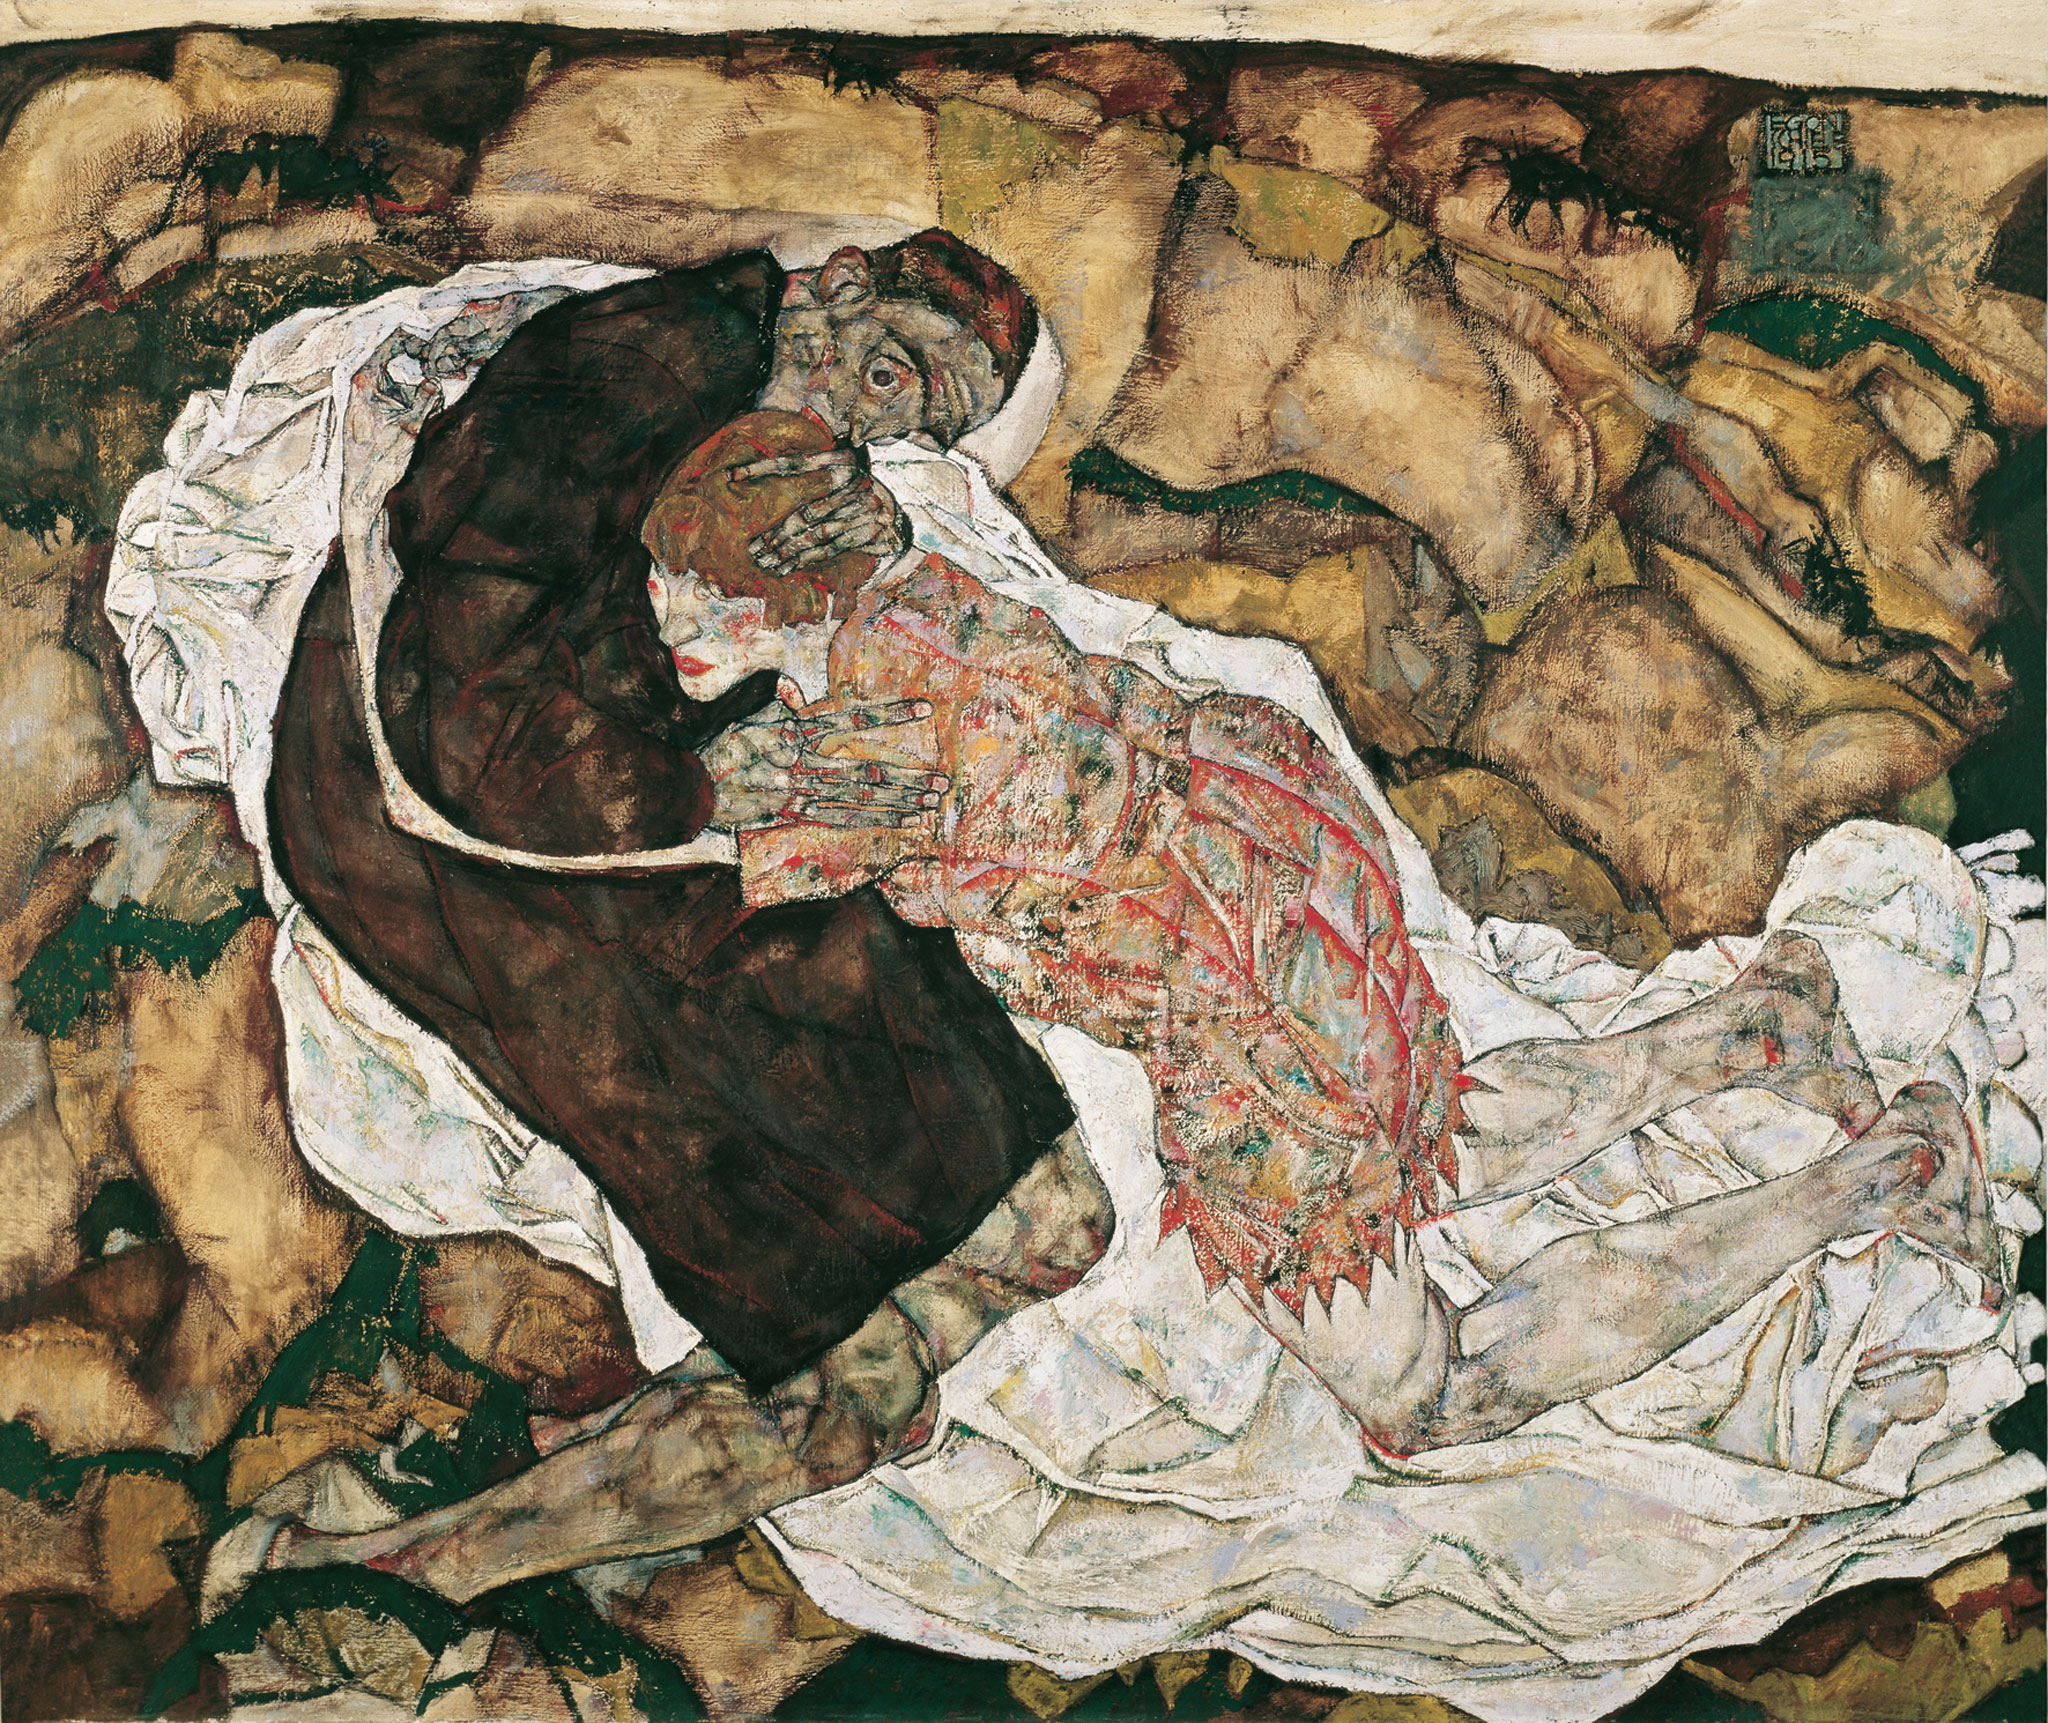 La Morte e la Fanciulla by Egon Schiele - 1915 - 89,5 x 125,5 cm 